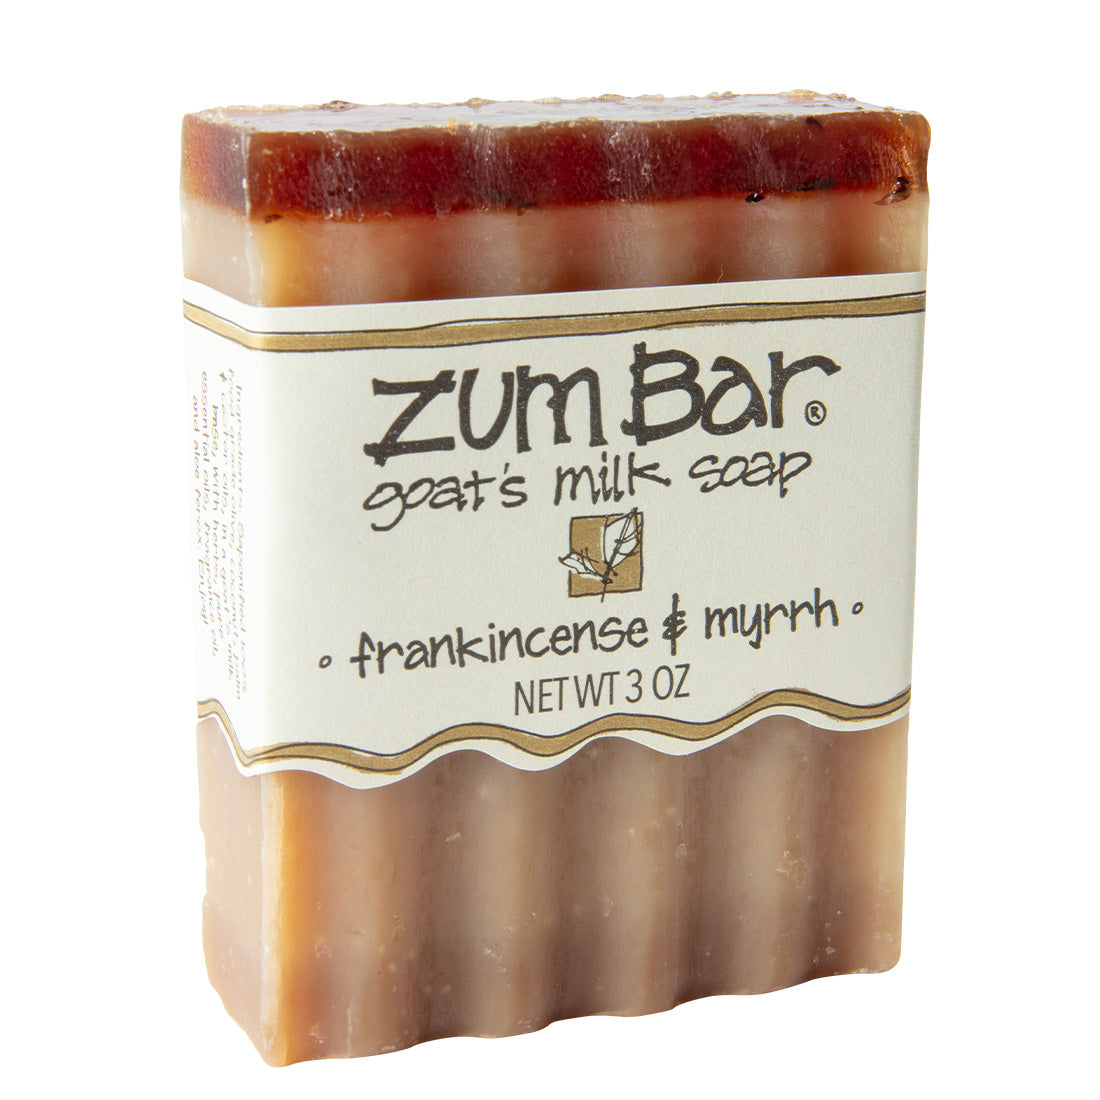 Frankincense & Myrrh Bar Soap